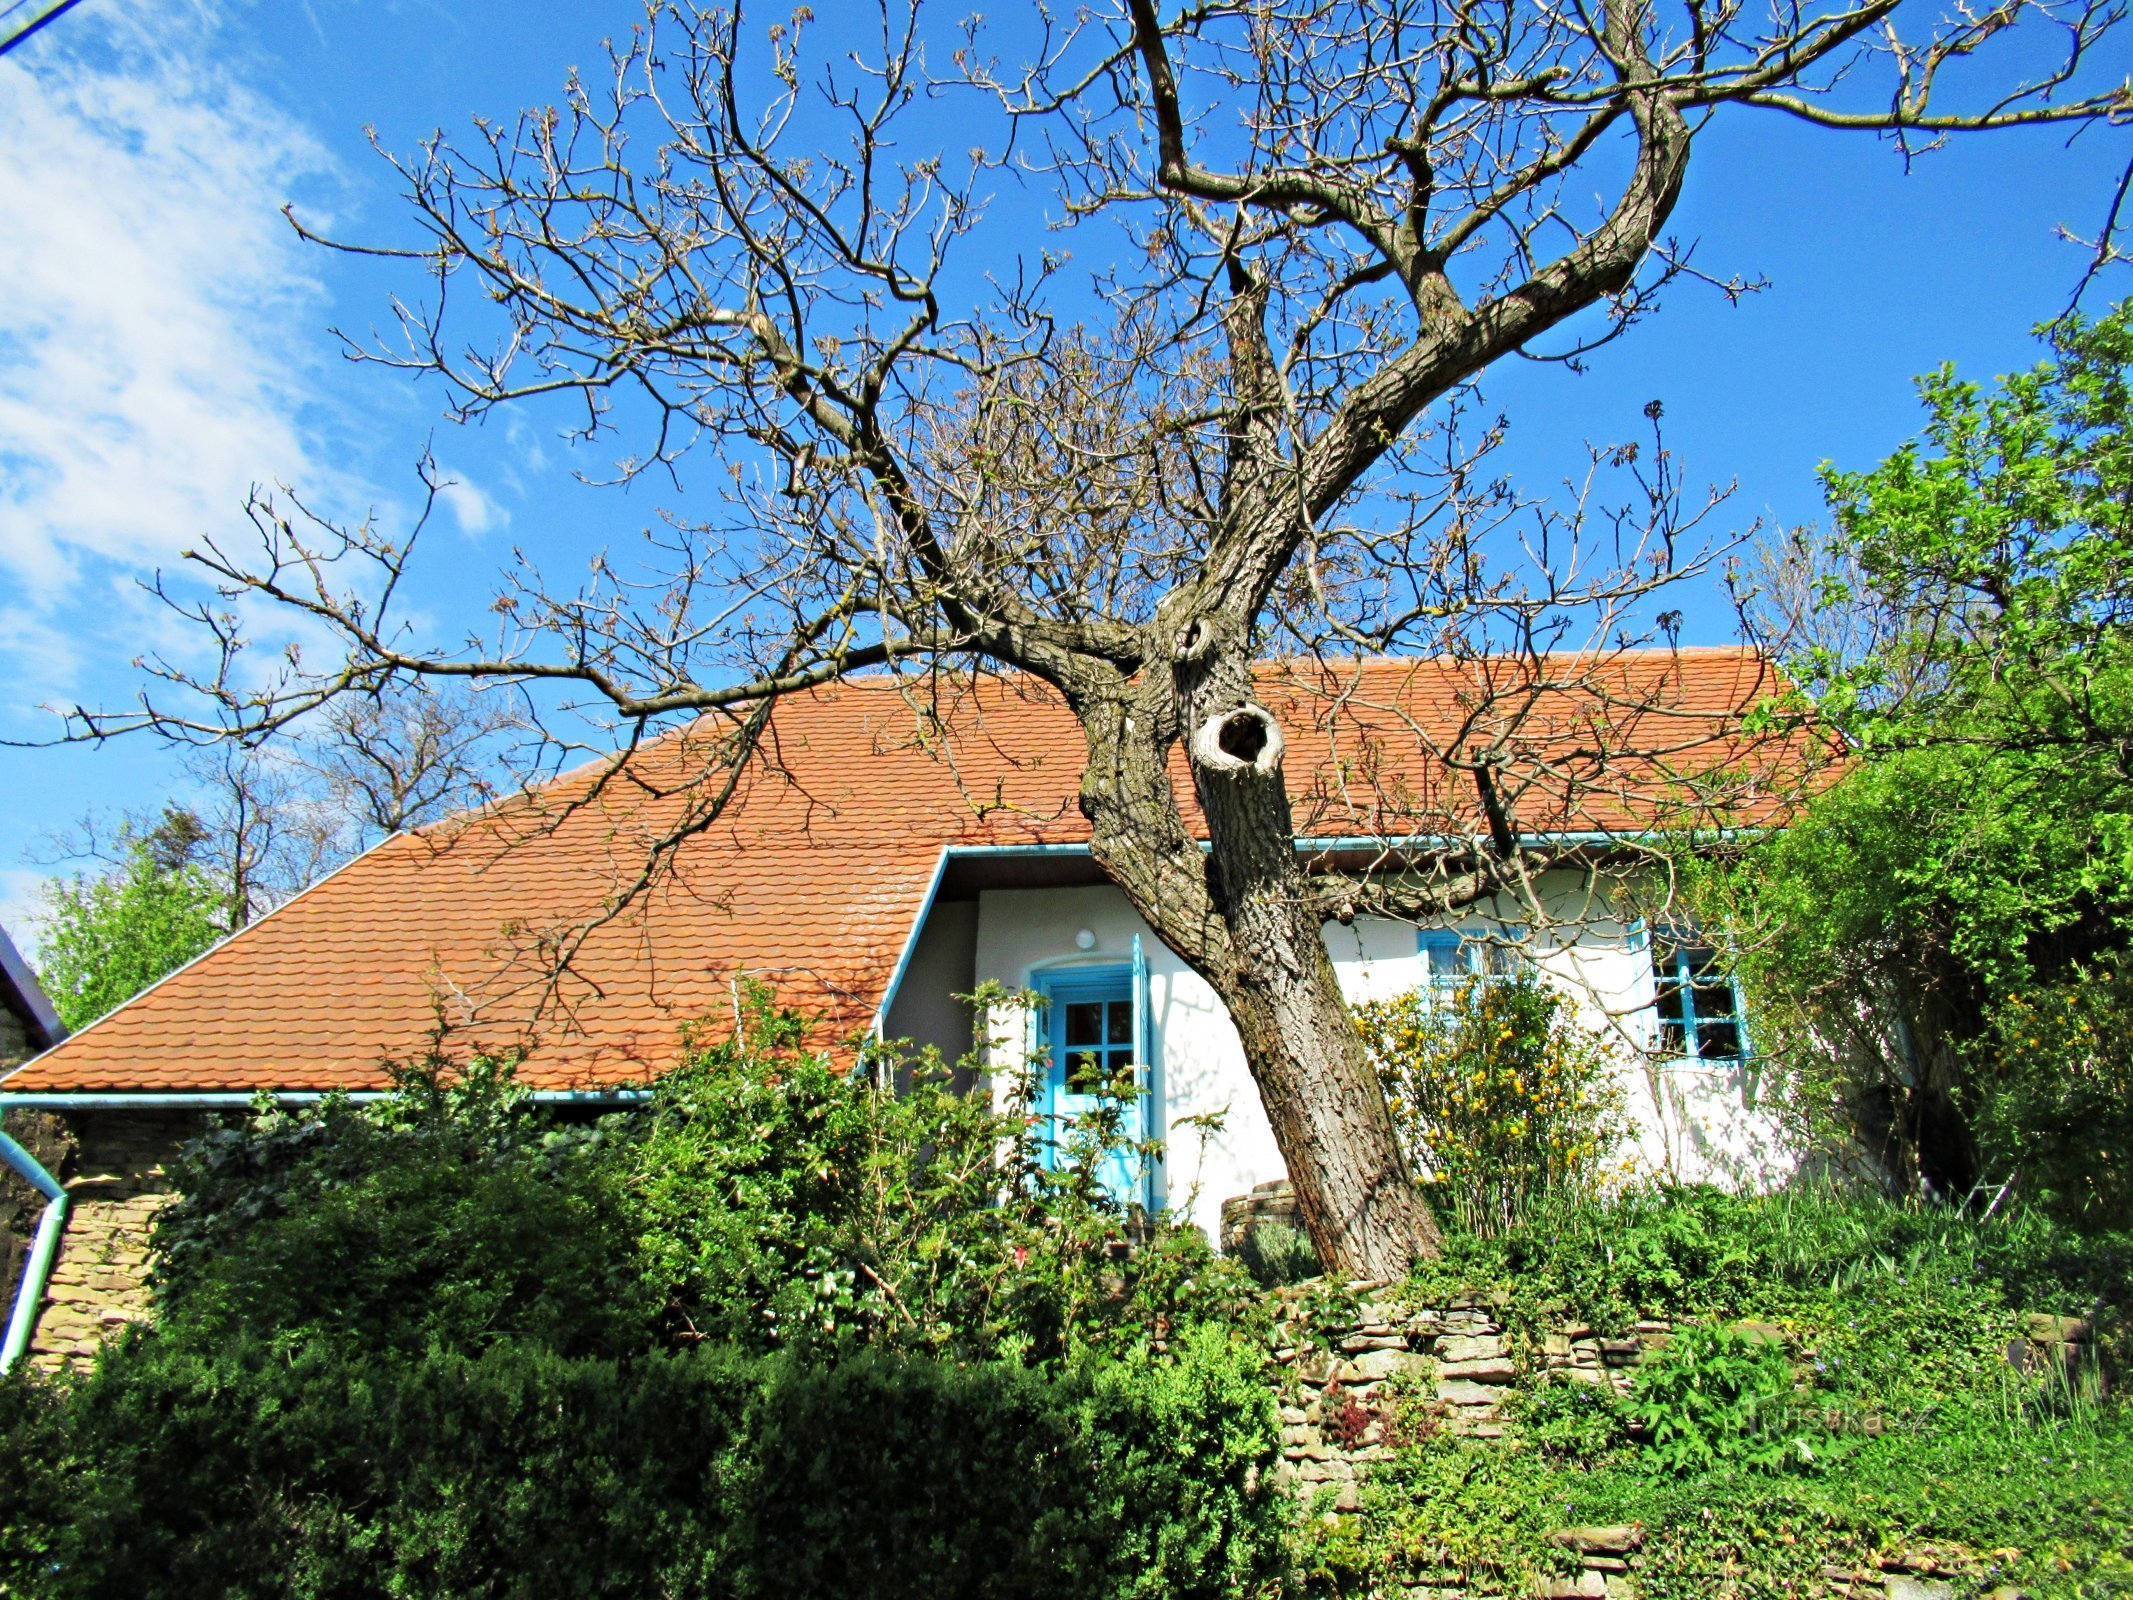 Το χωριό Javorník, γραφικά σπίτια στην περιοχή - Kopanky στο χωριό Javorník στο Slovácko